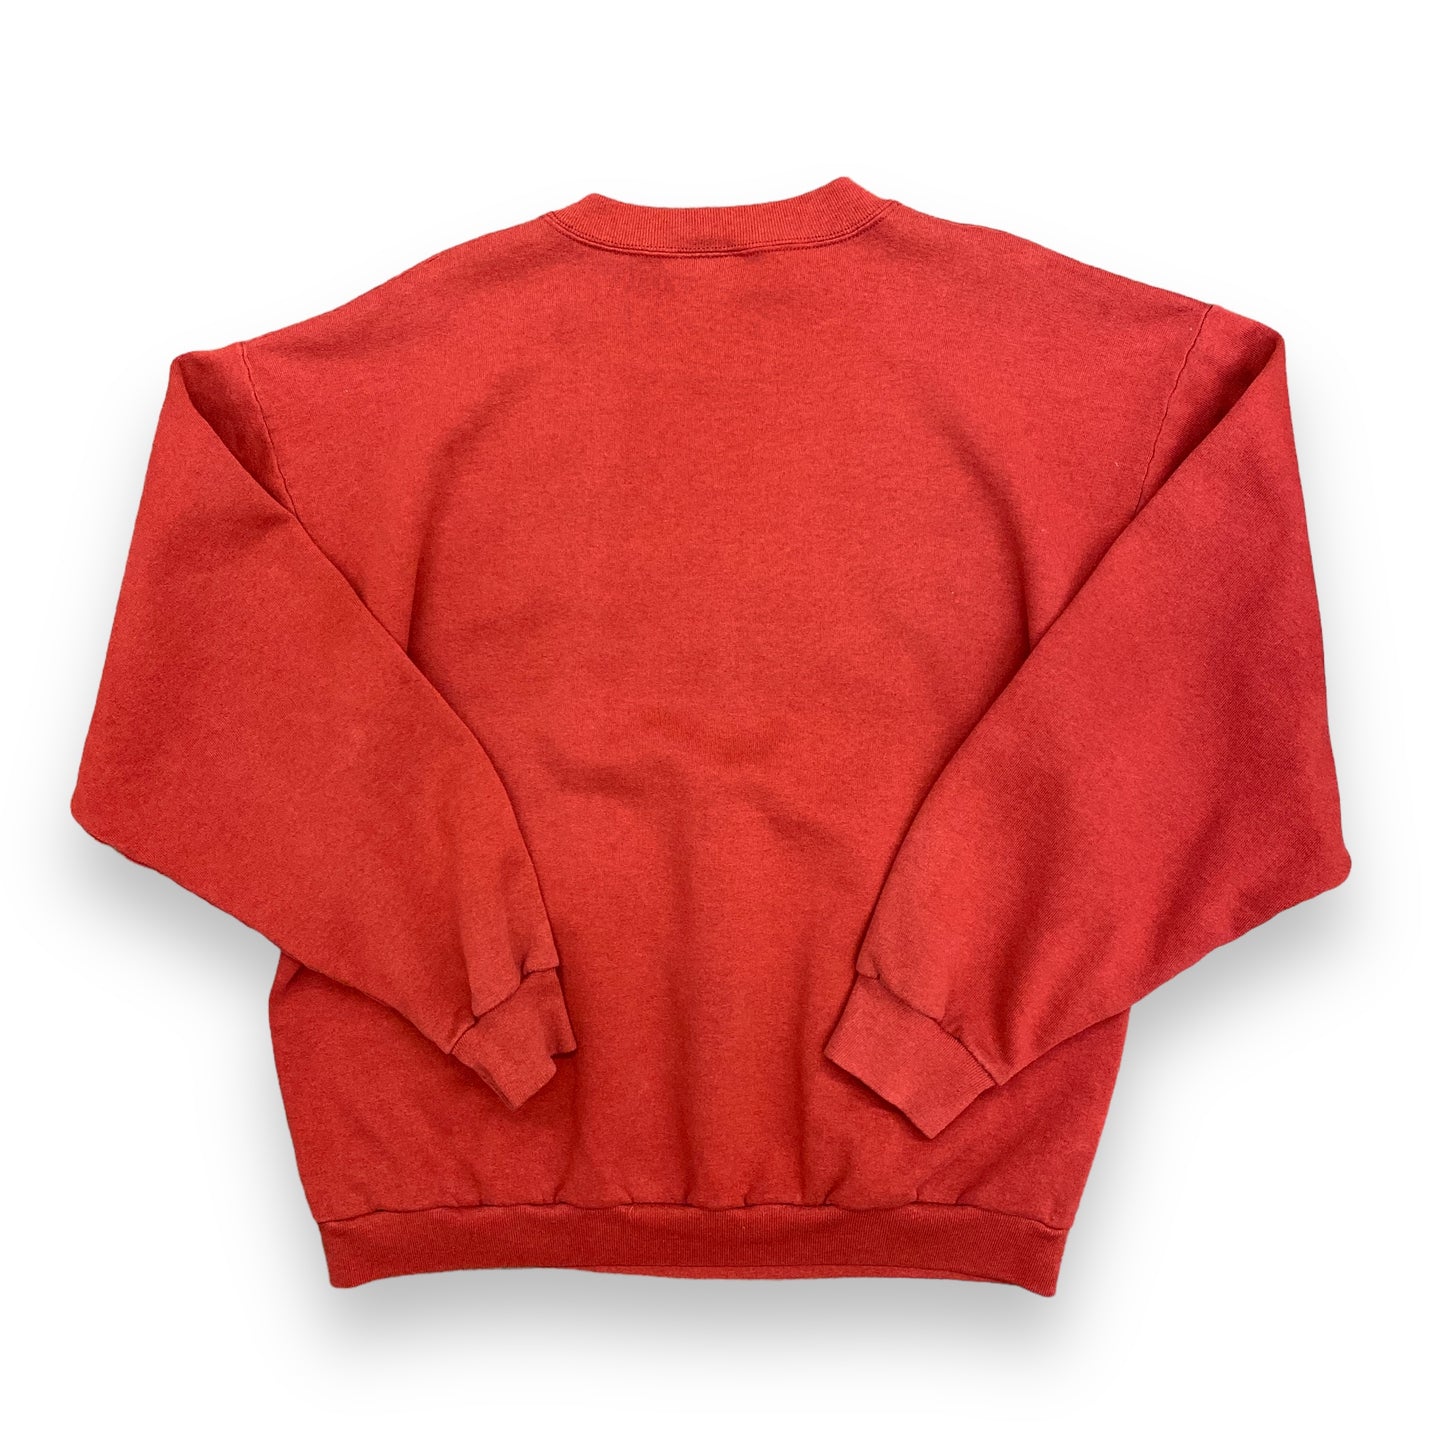 90s Alabama "BAMA" Crimson Tide Sweatshirt - Size XL